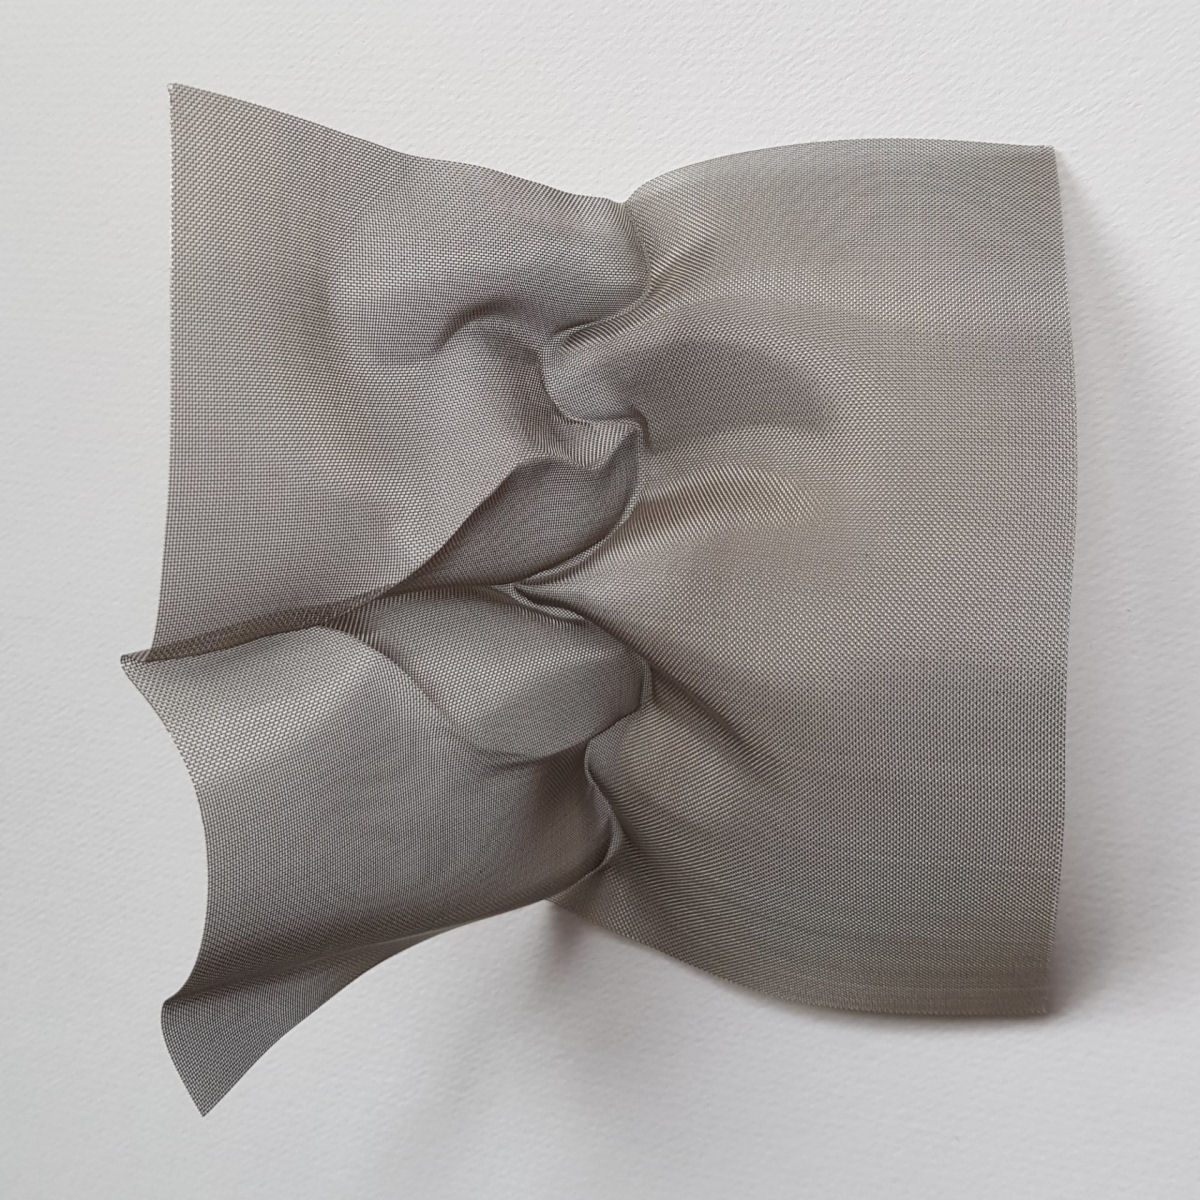 Esculturas sensuais em simples folhas de papel sugerem momentos de intimidade 08